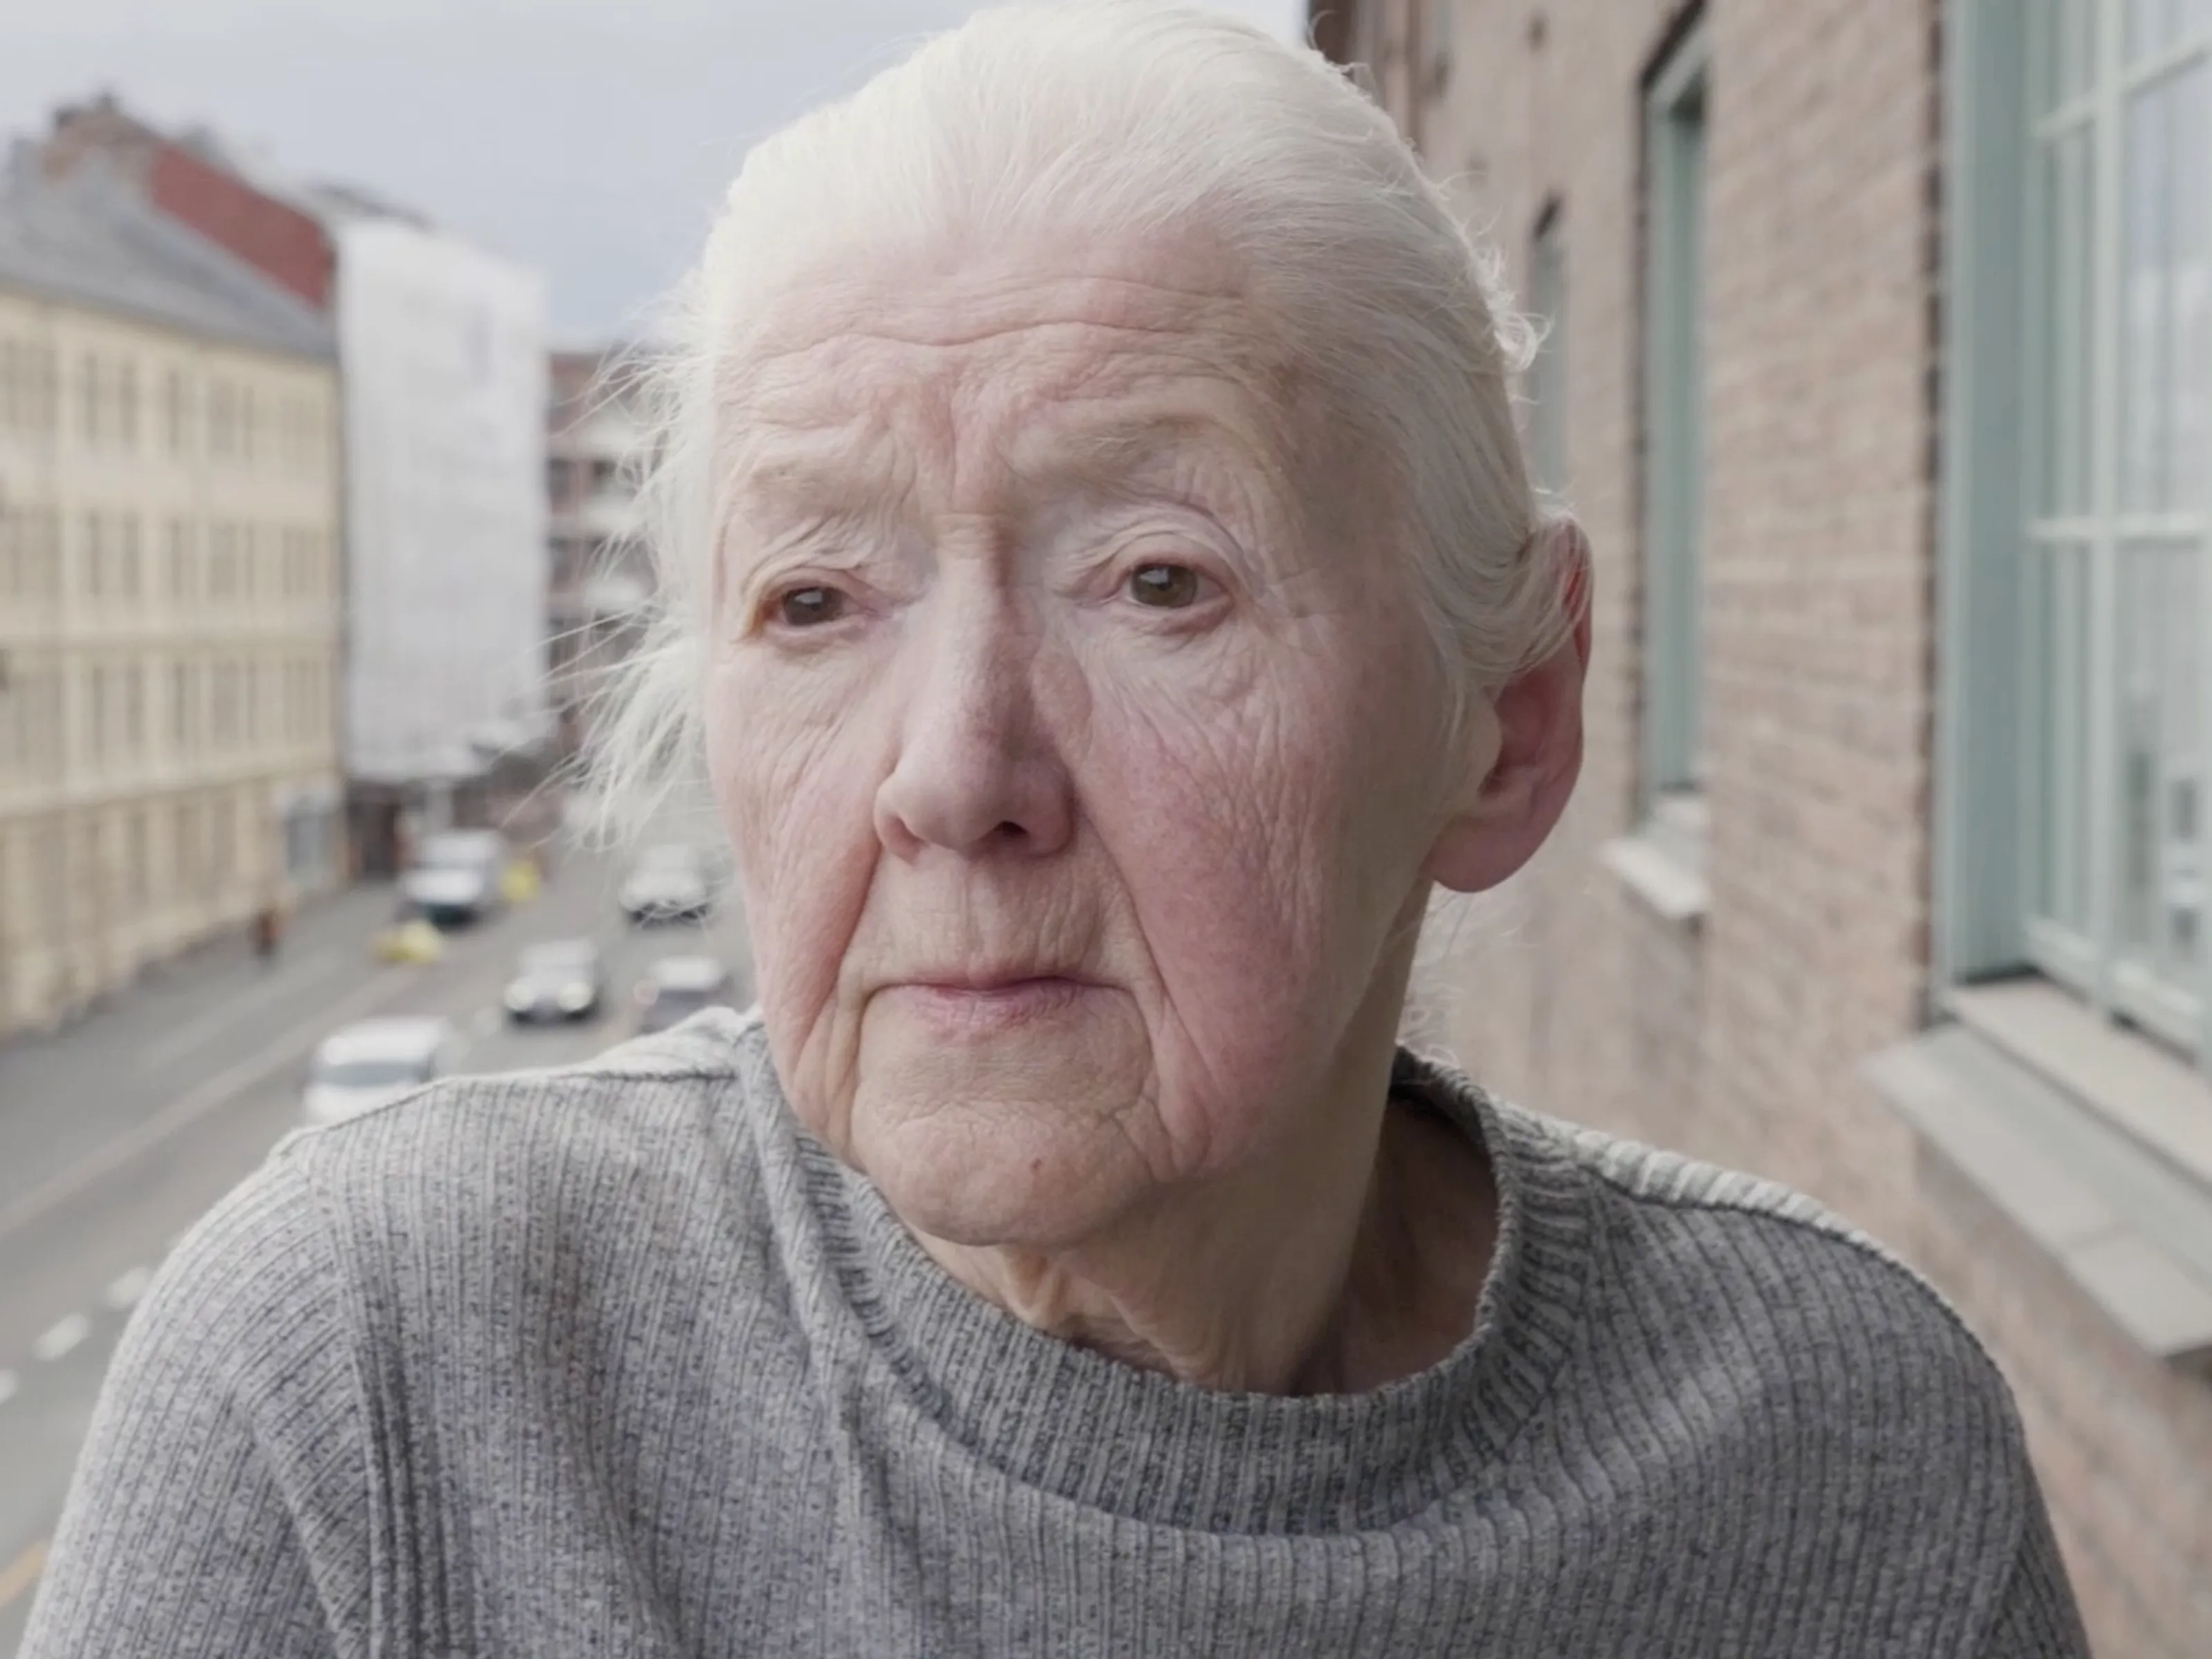 Zdenka Rusova ser utover Oslos gater fra balkongen sin